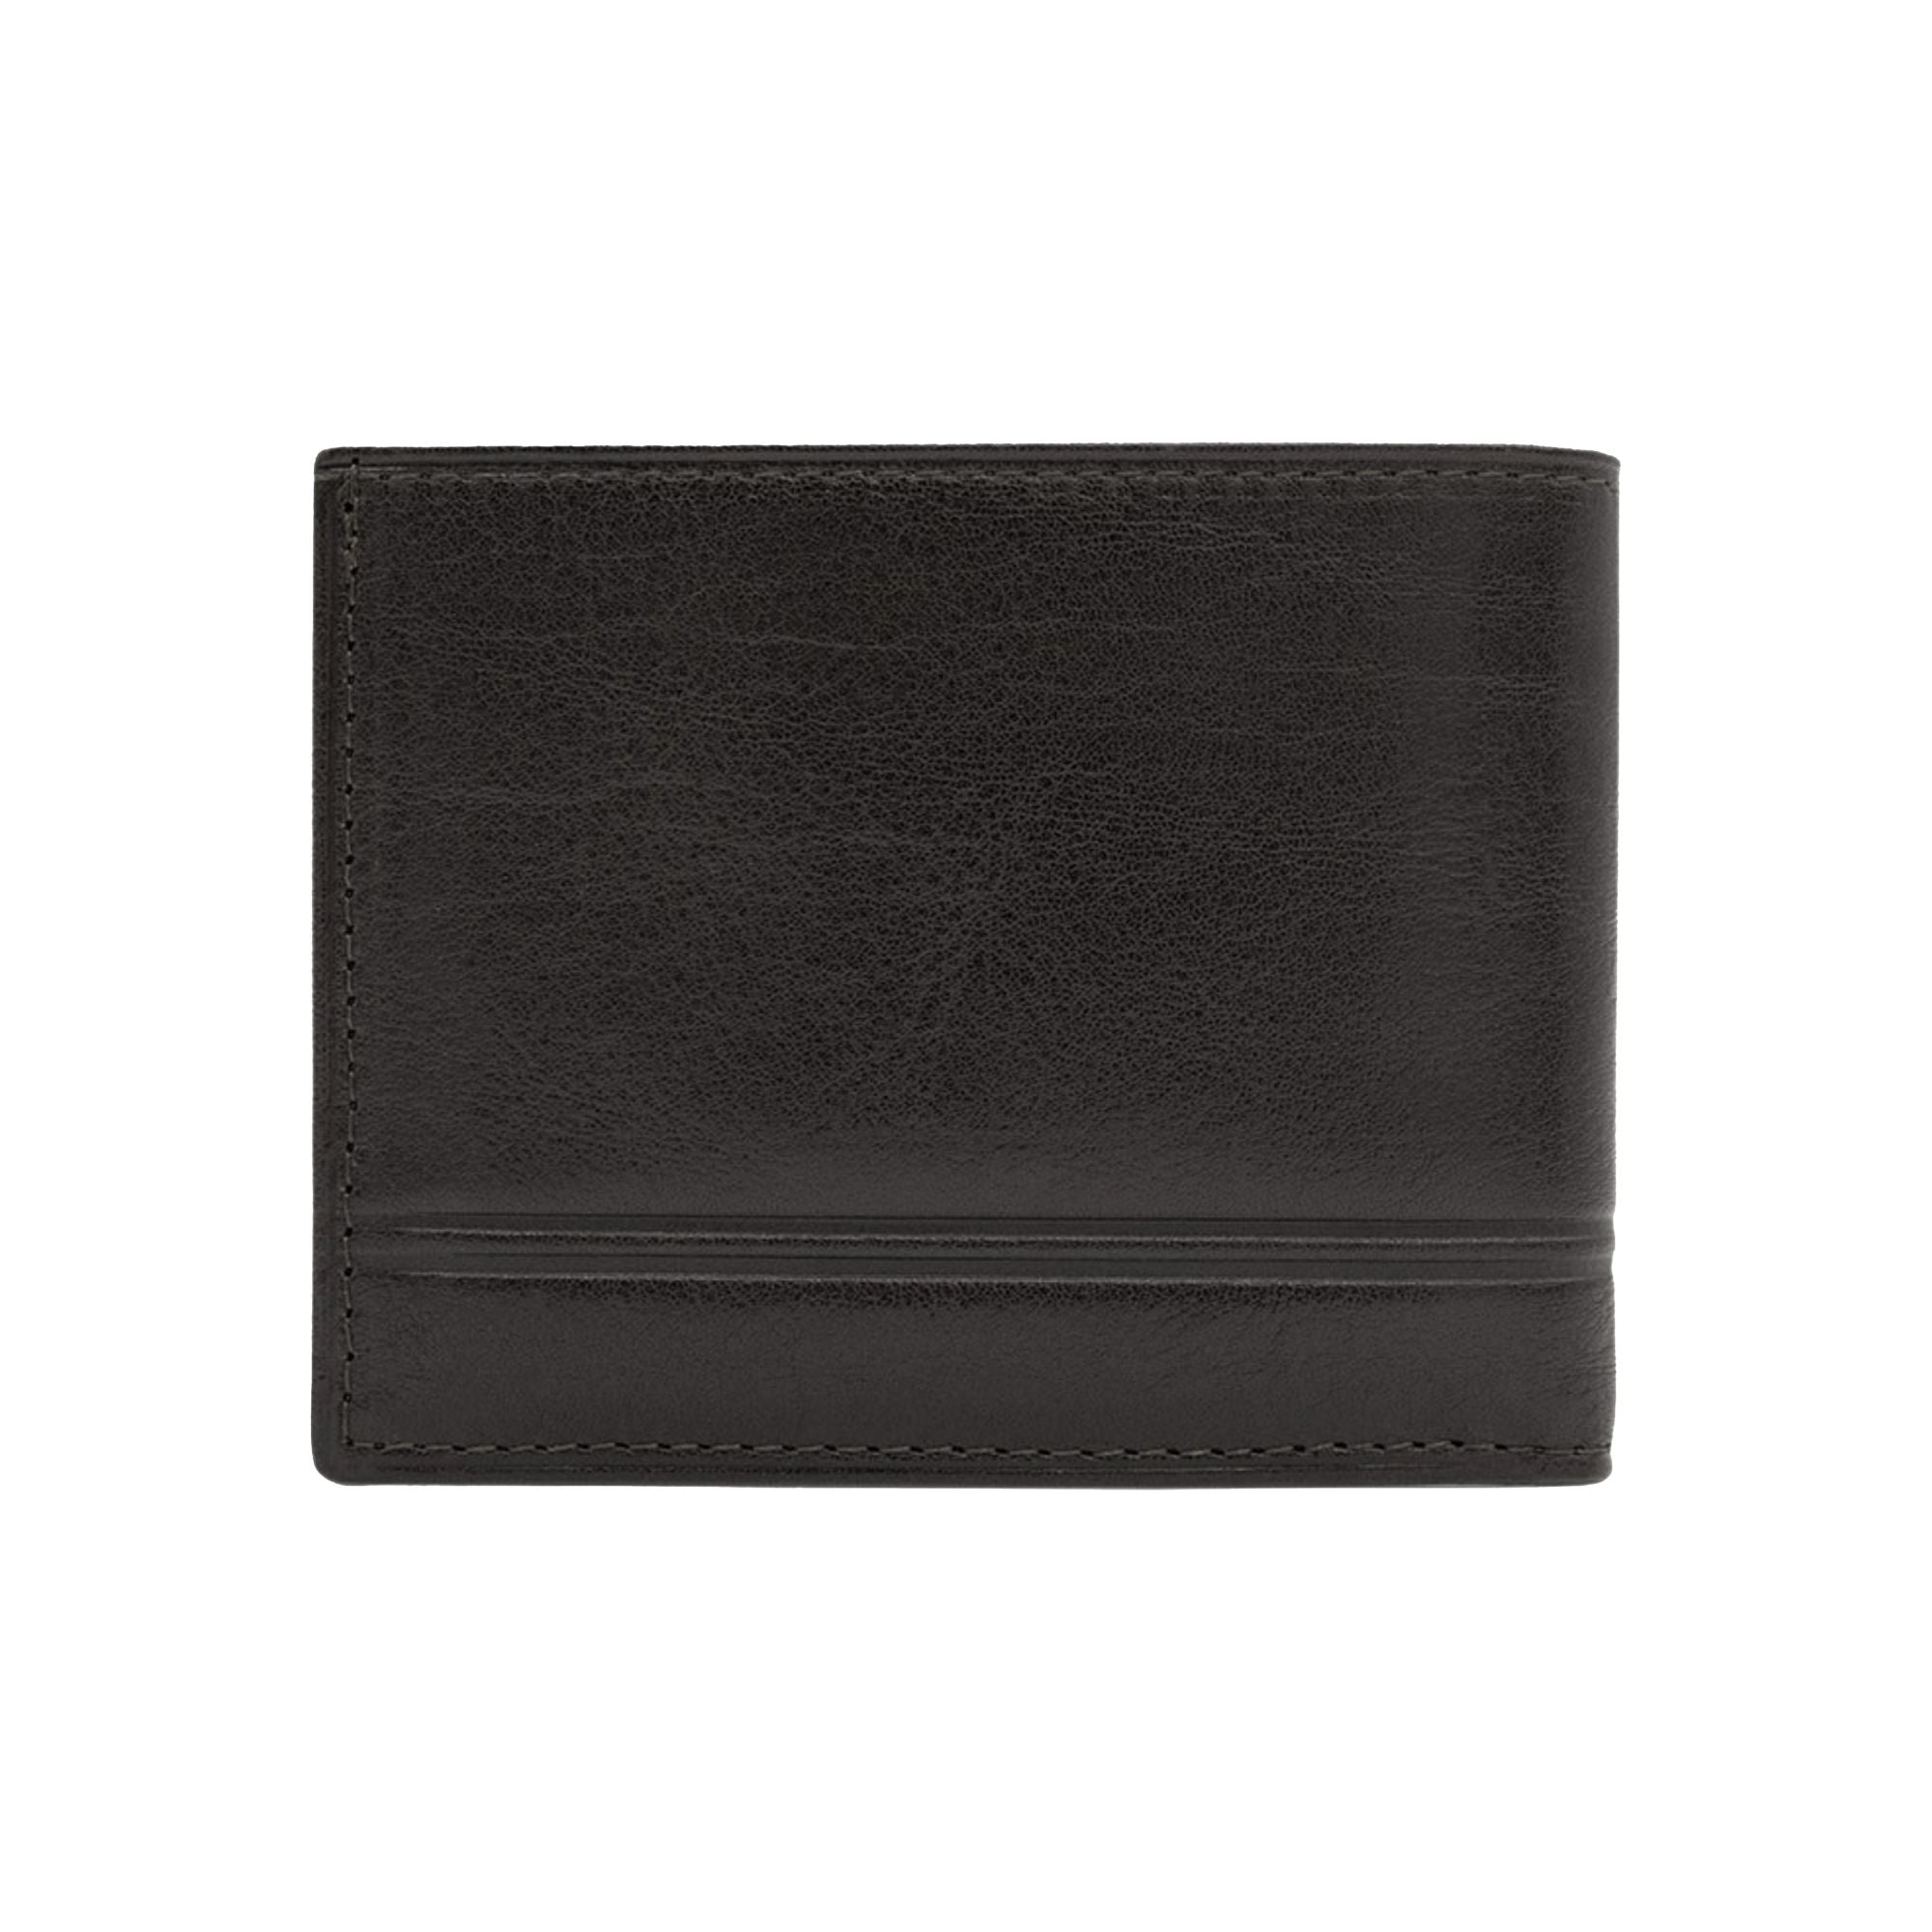 #color_ Black | Cavalinho Men's Trifold Leather Wallet - Black - 28610523.01.99_3